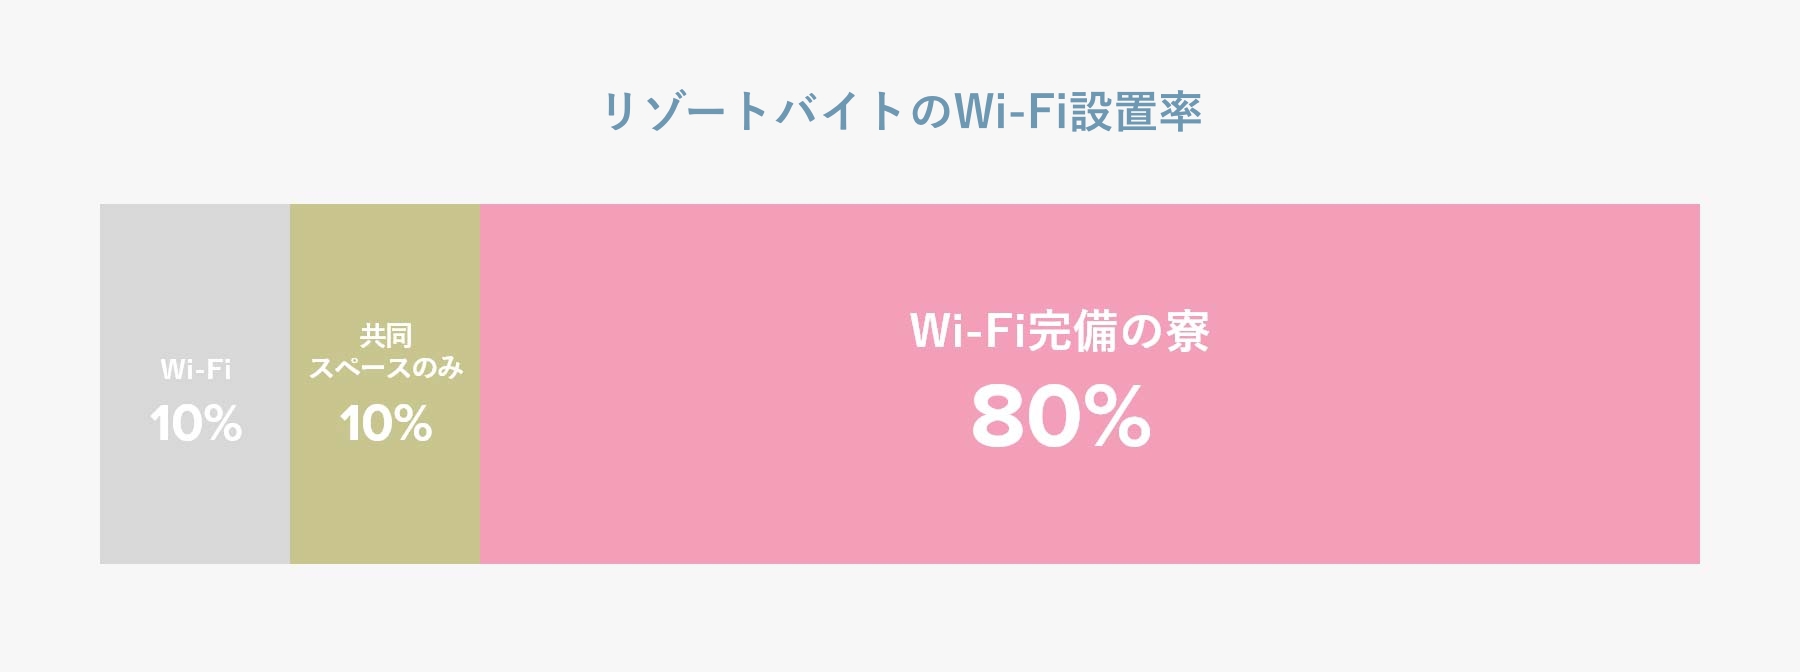 寮のWi-Fi設置率